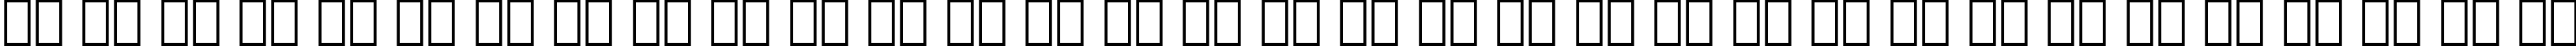 Пример написания русского алфавита шрифтом Serifa Black BT